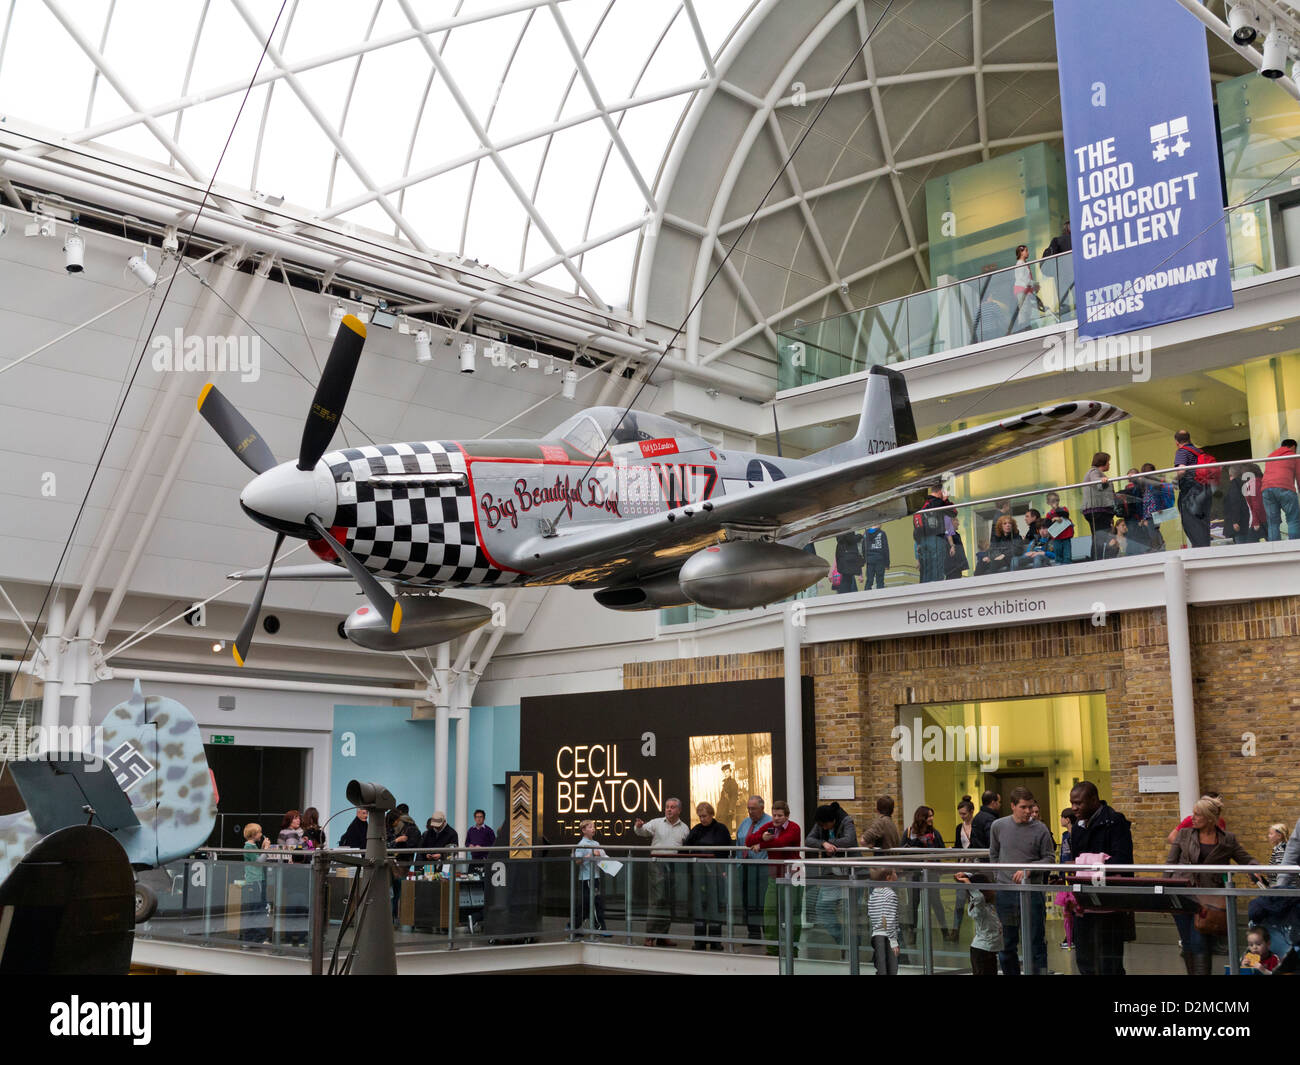 Eines der Flugzeuge auf dem Display an das Imperial War Museum, London Stockfoto